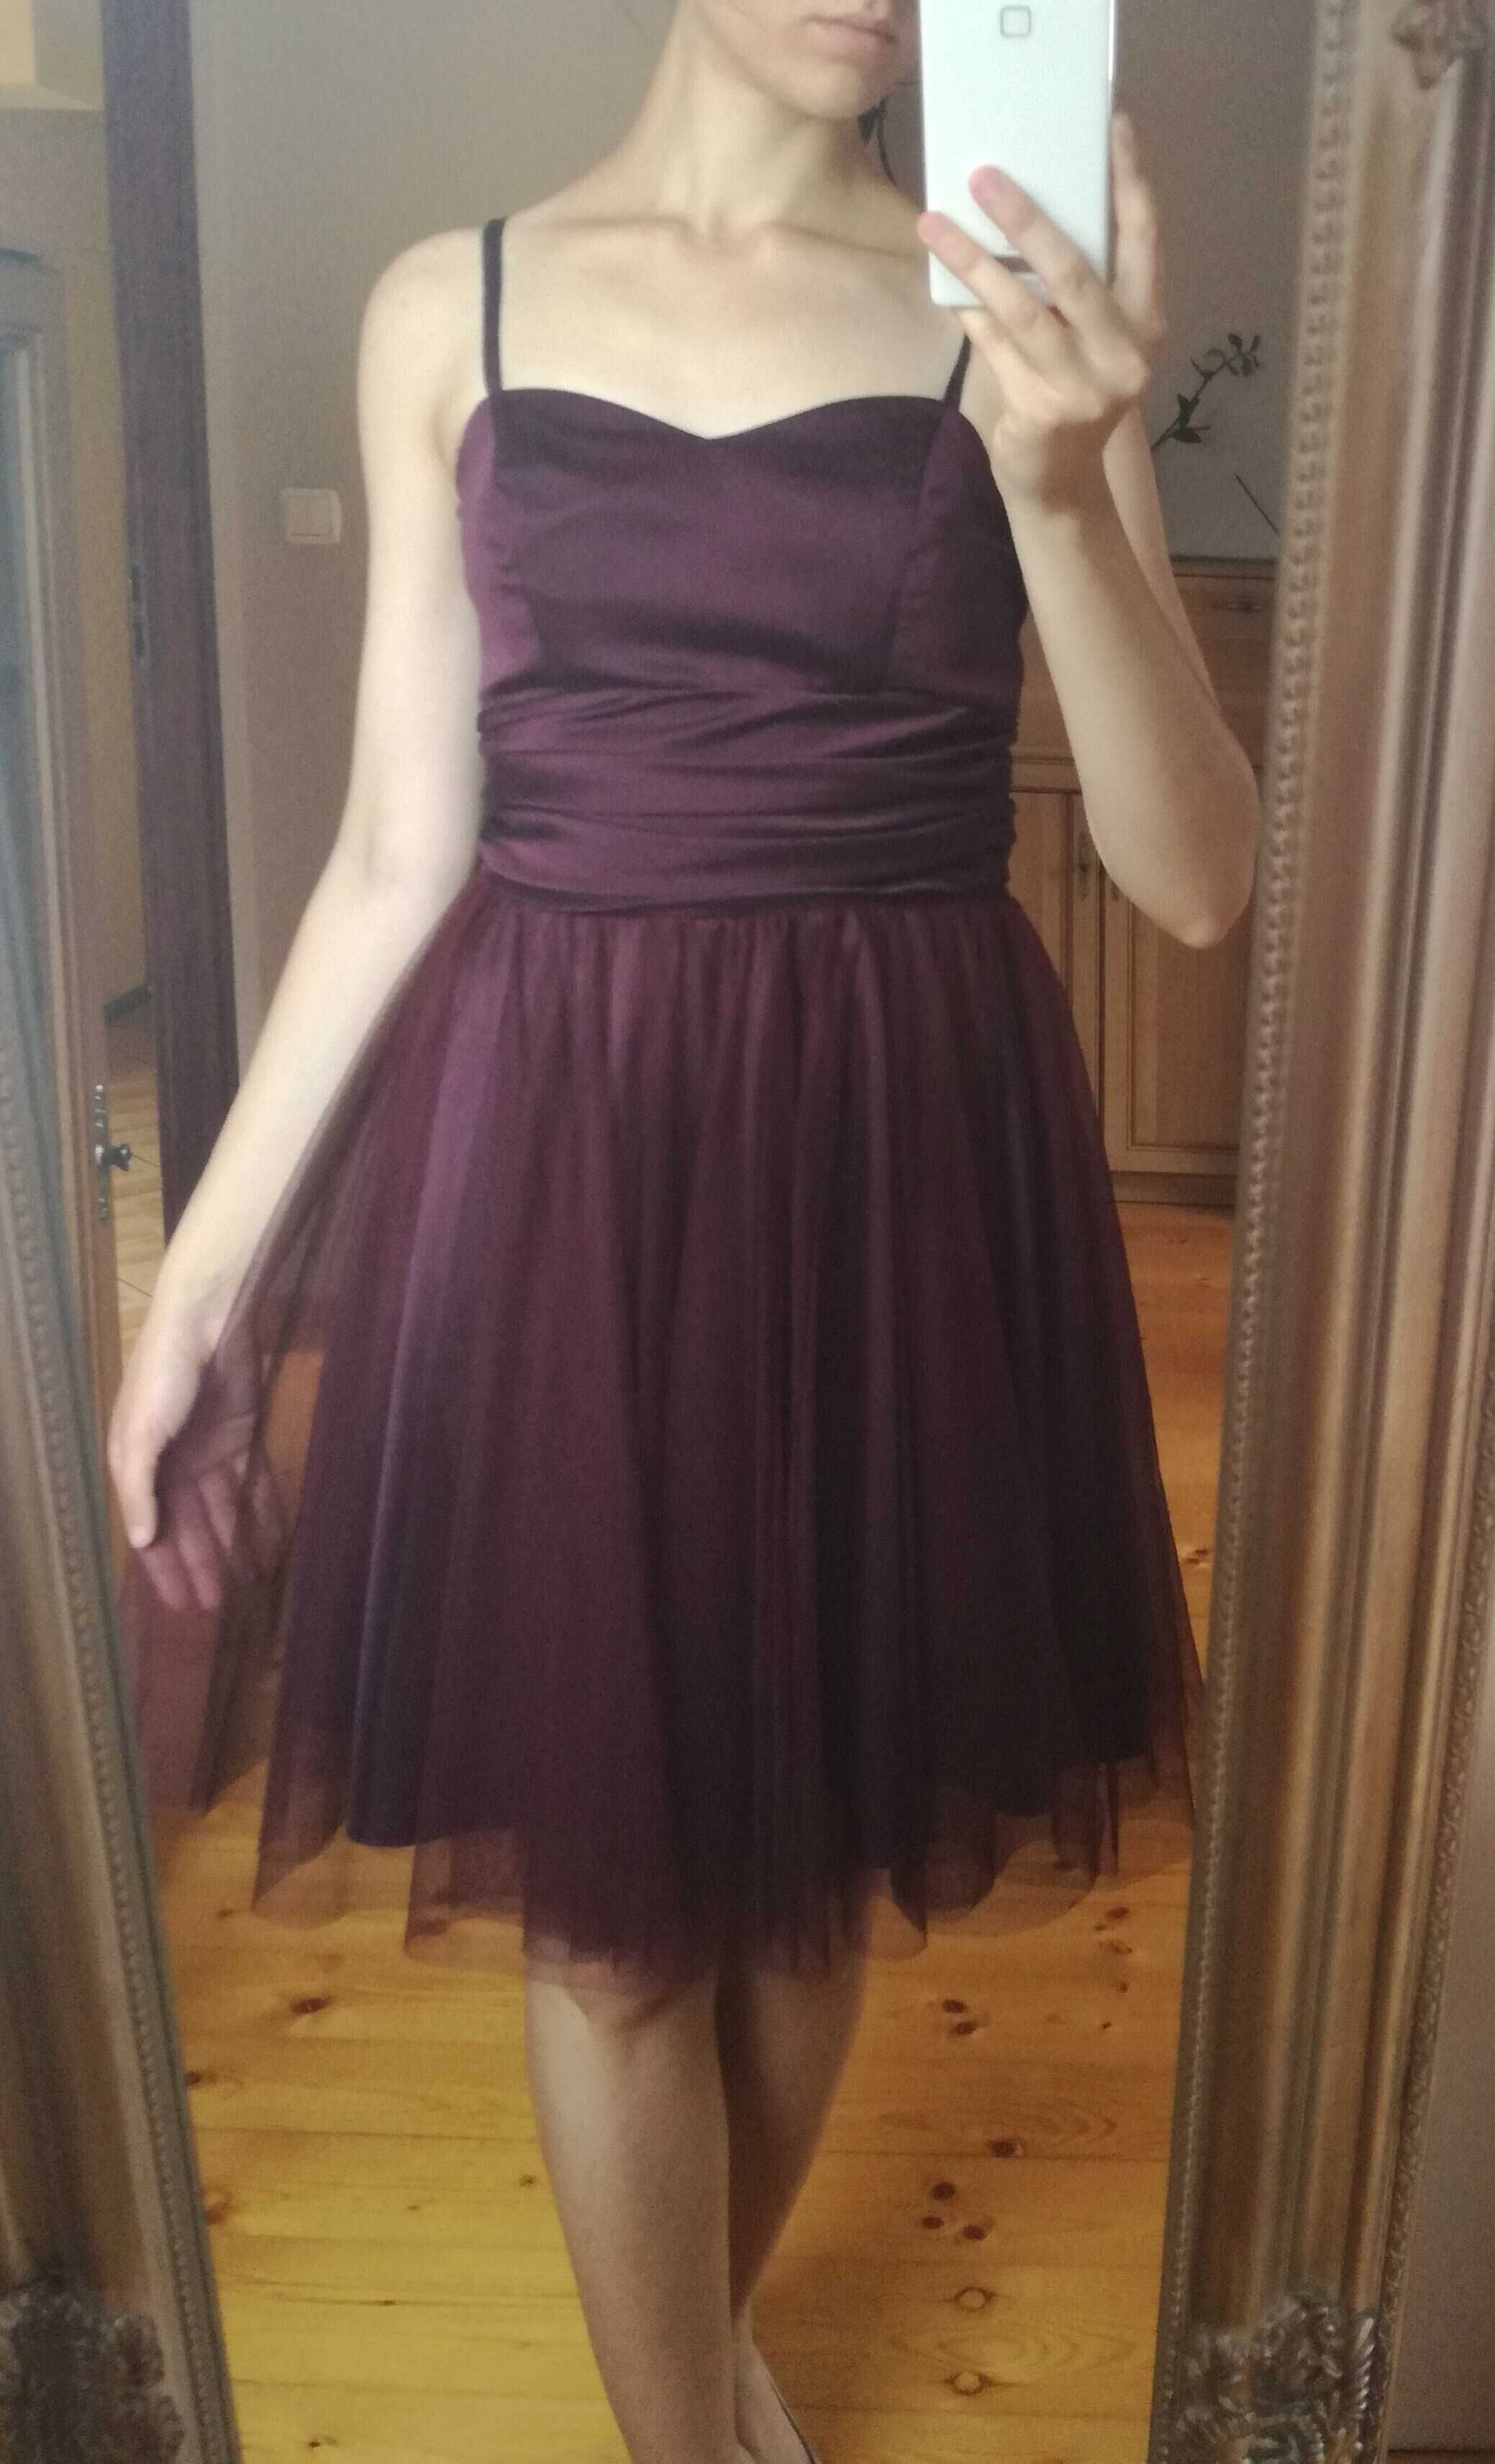 Koktajlowa sukienka tiulowa, śliwkowa, fioletowa. Rozm. 34 (XS)